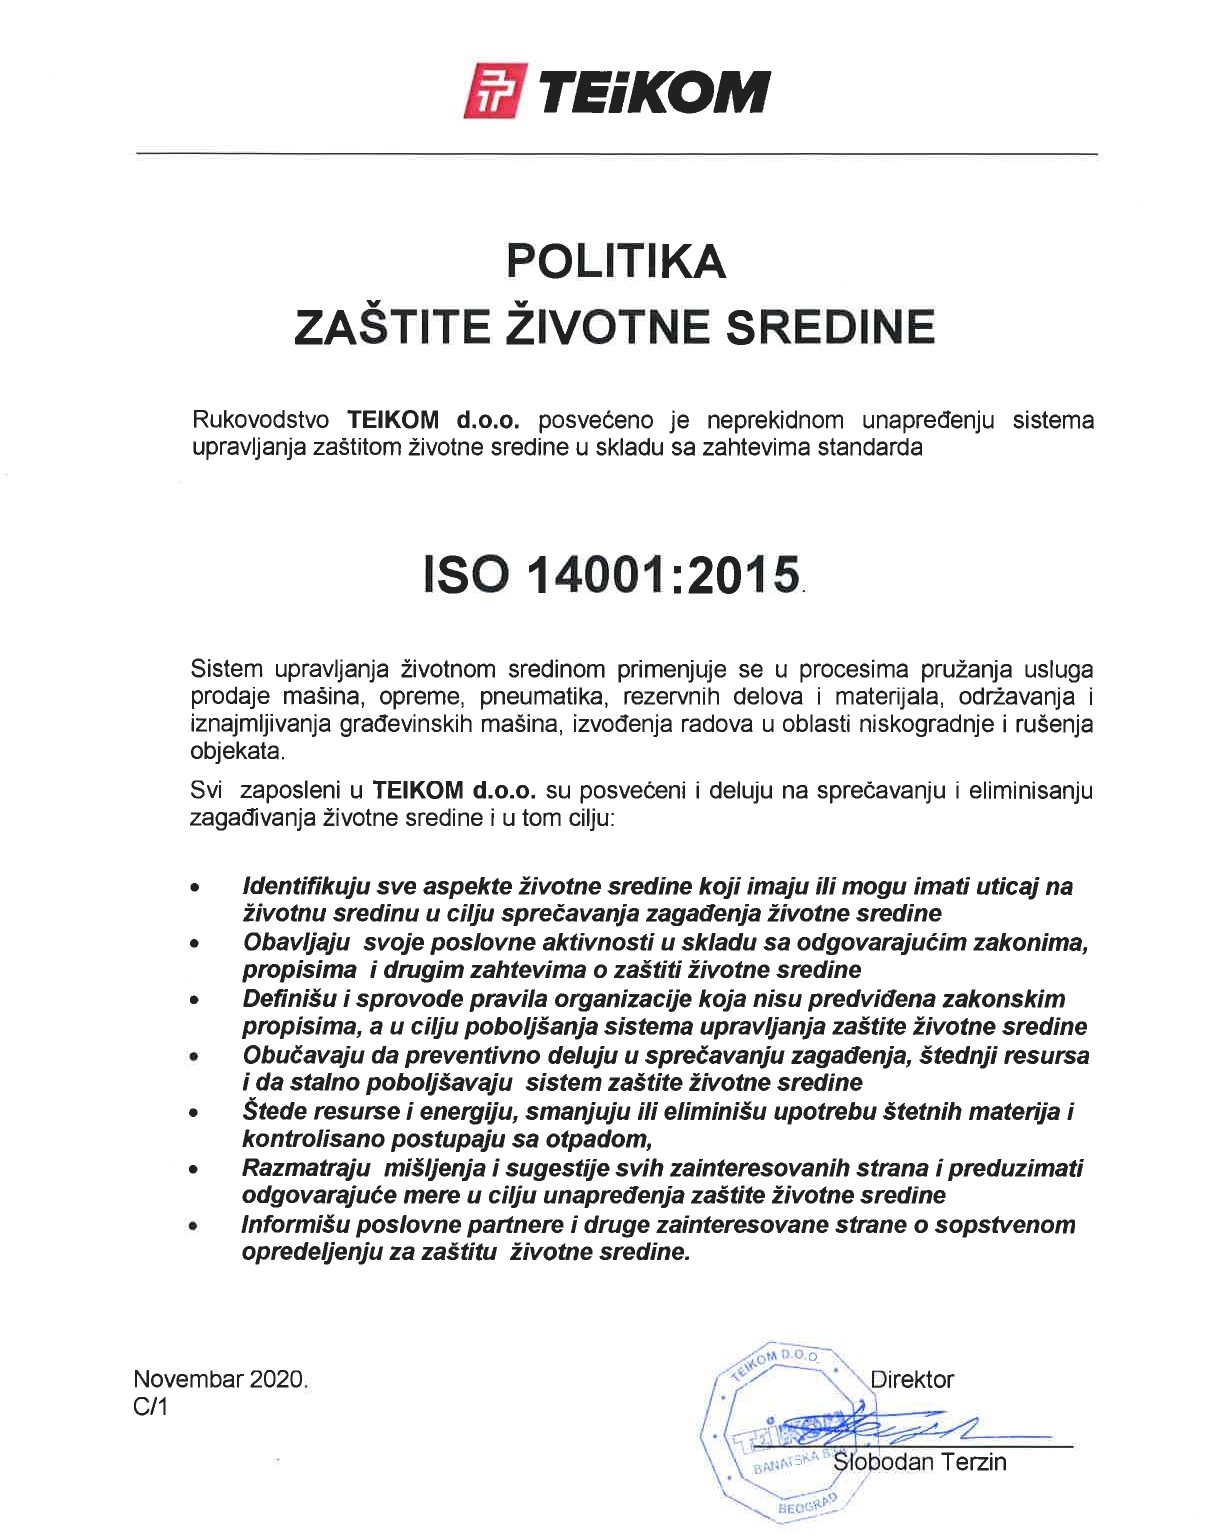 Politika ISO 14001